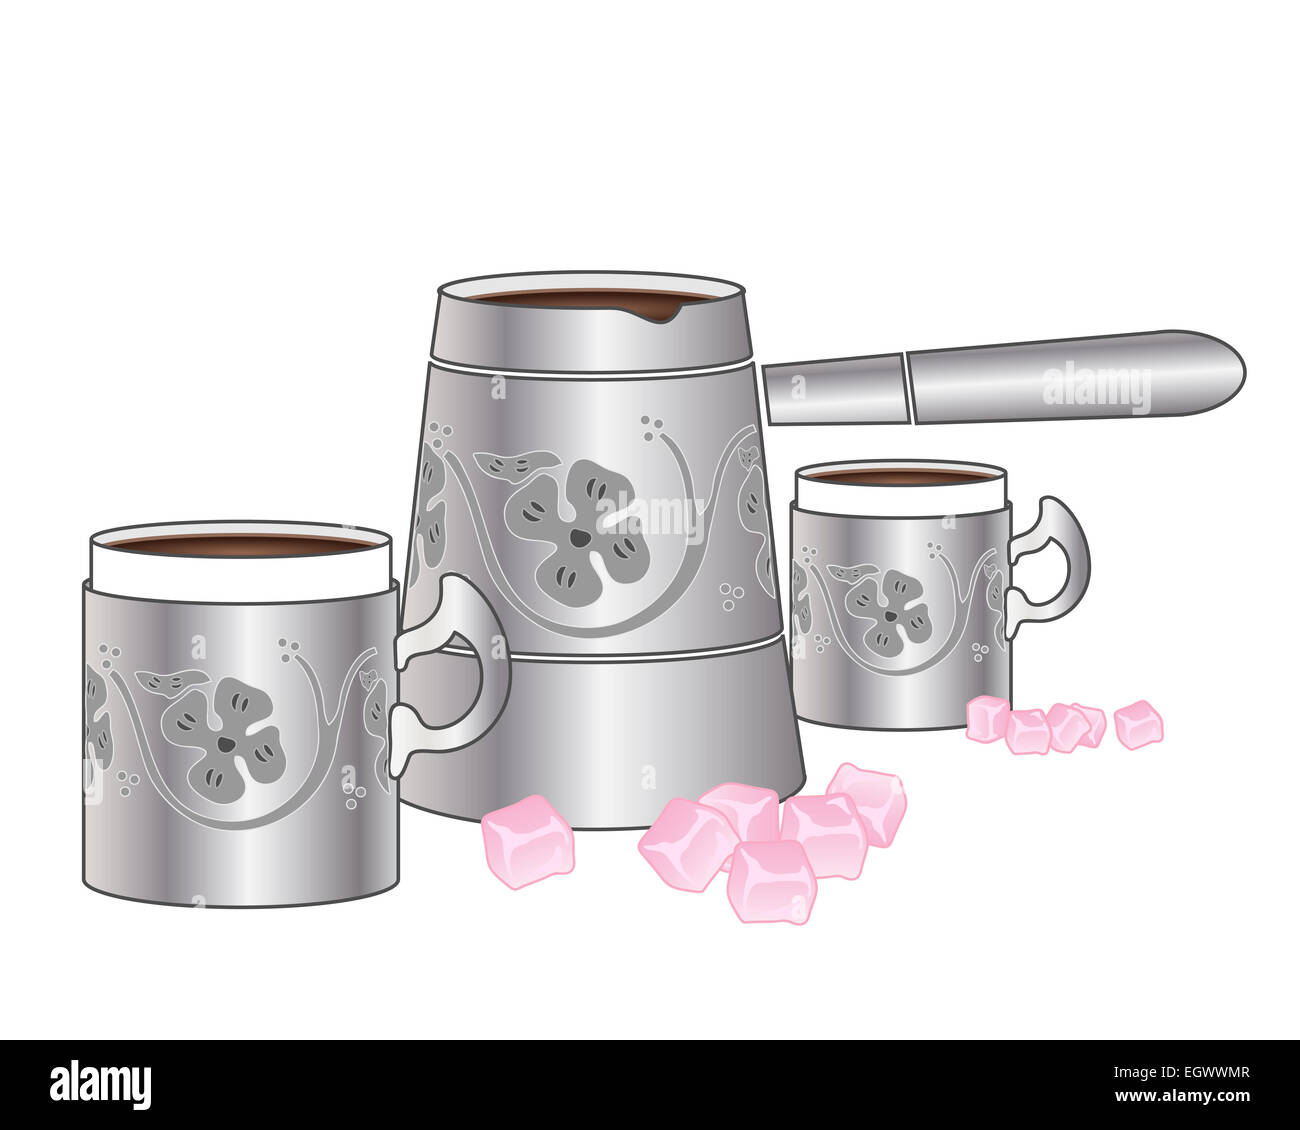 Une illustration d'une cruche d'argent fantaisie avec des tasses de café turc et les places de loukoum sur fond blanc Banque D'Images